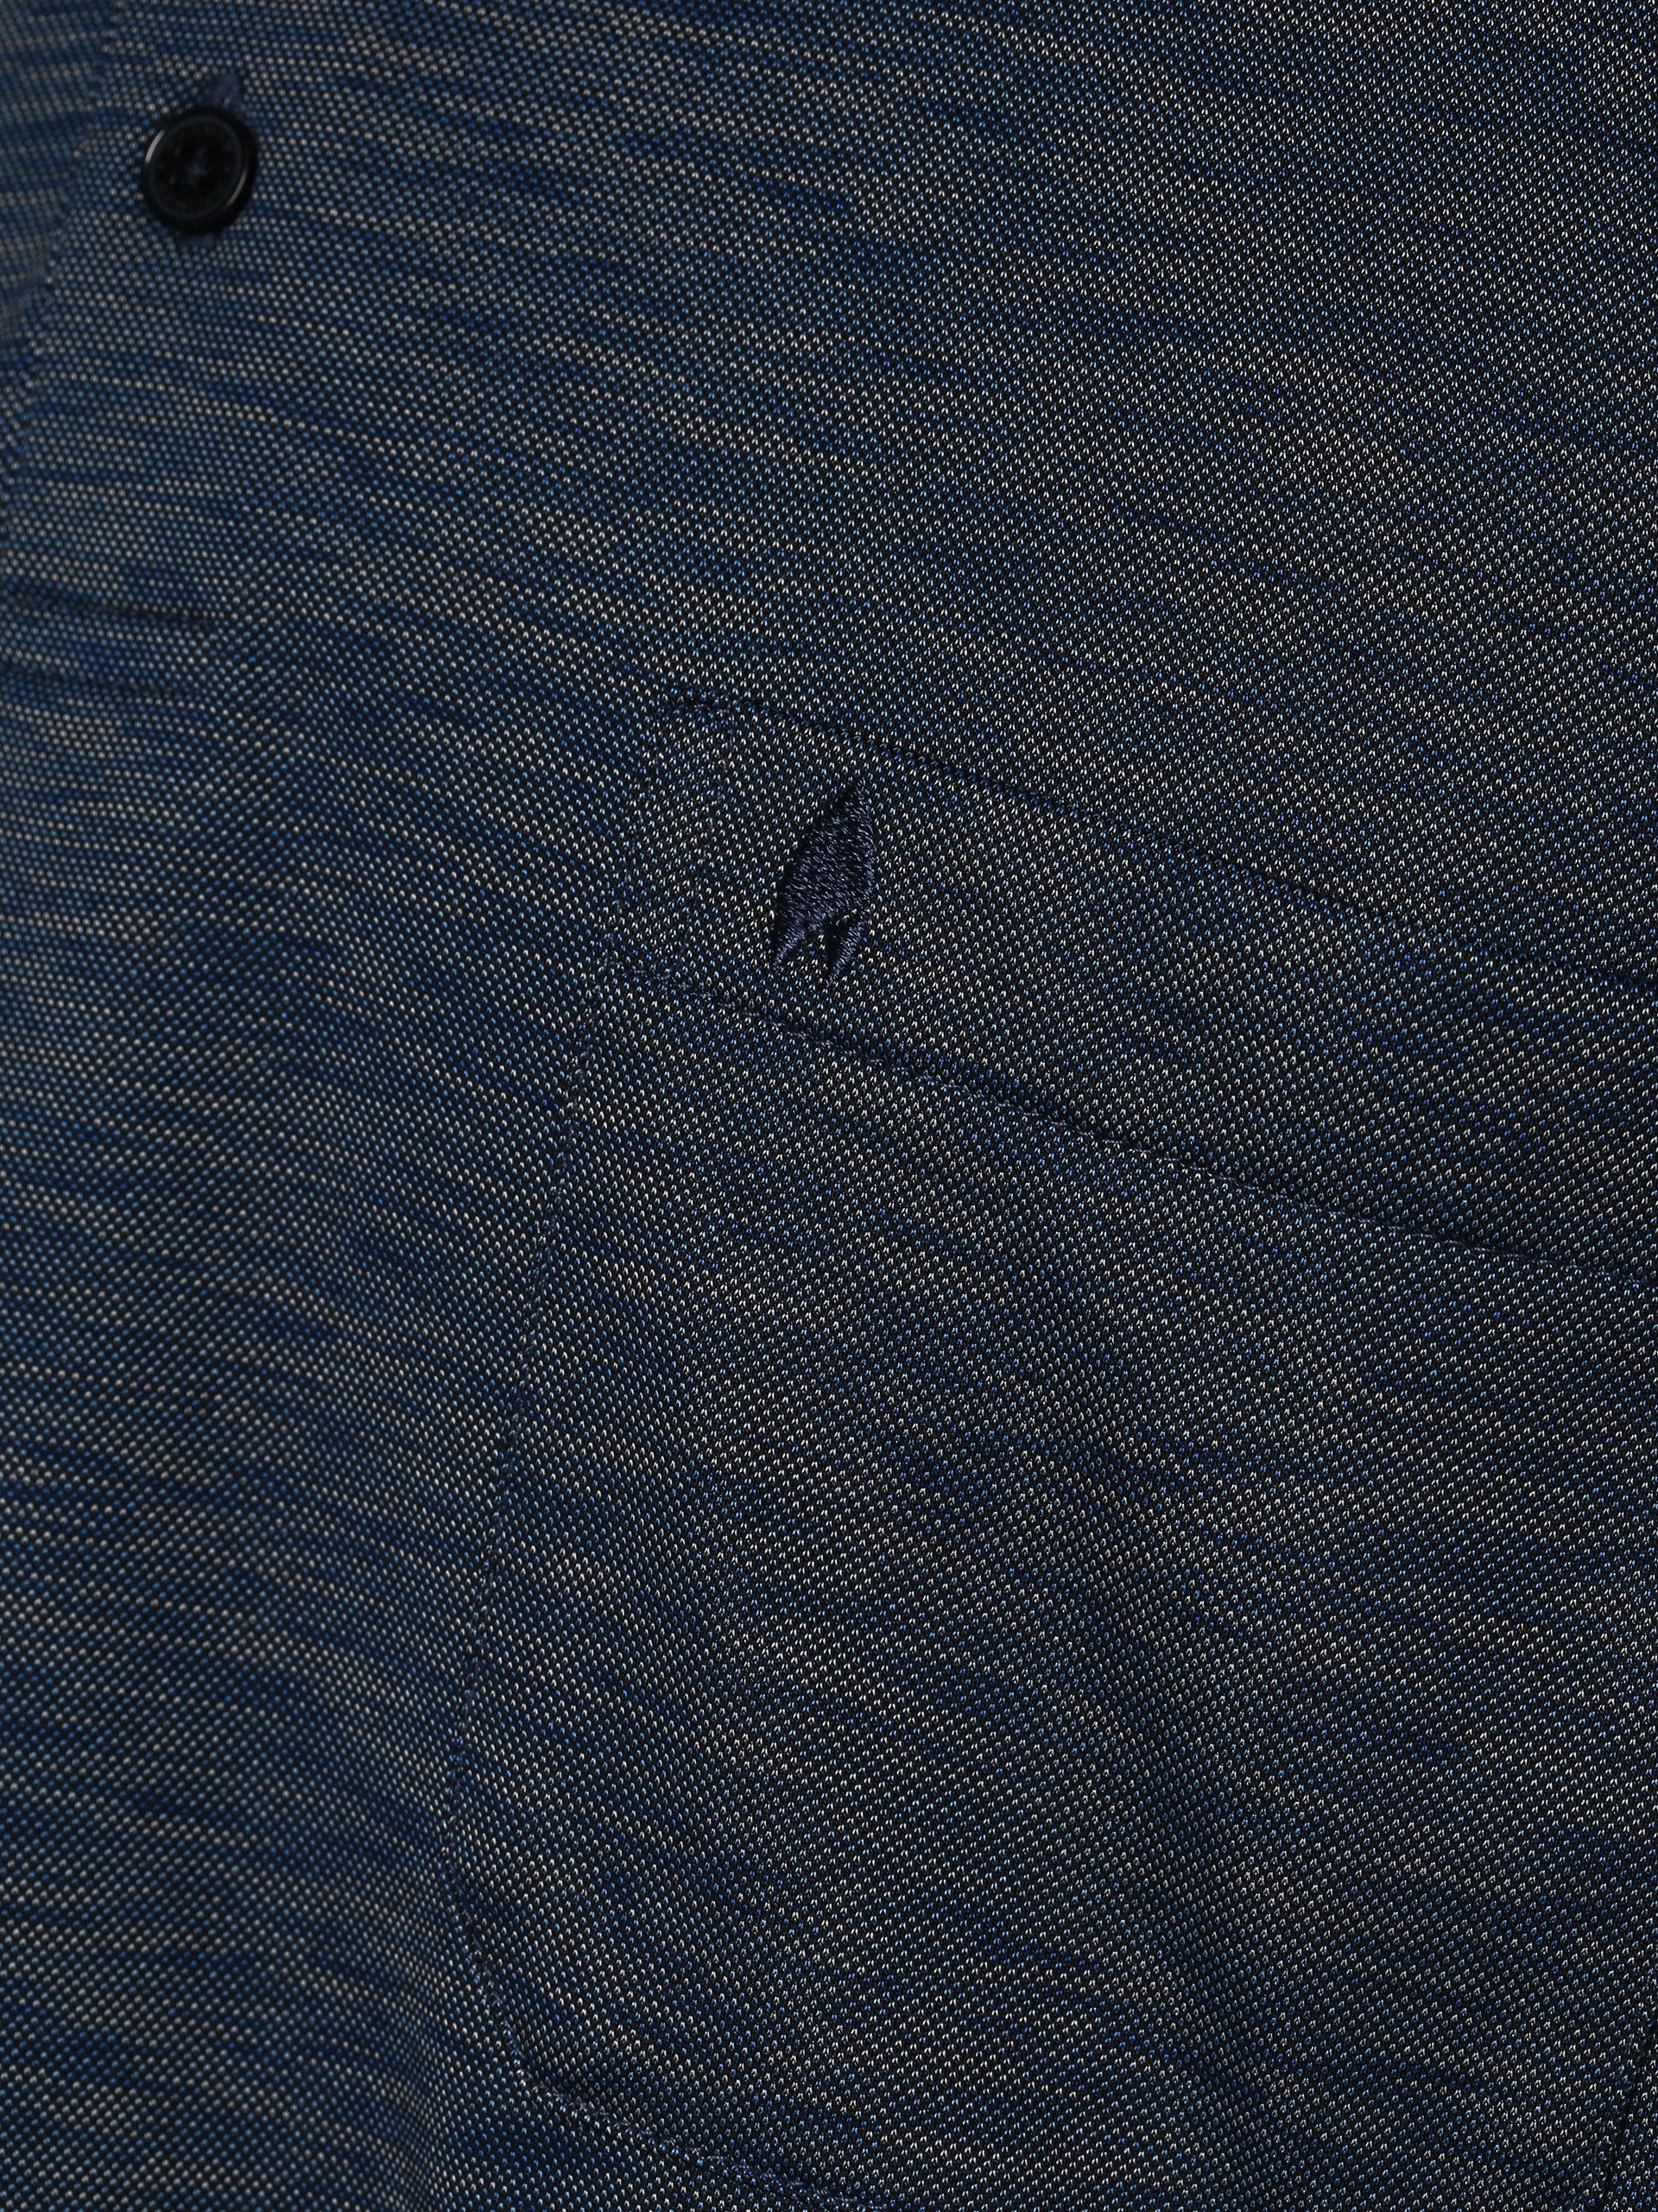 blau Poloshirt RAGMAN marine